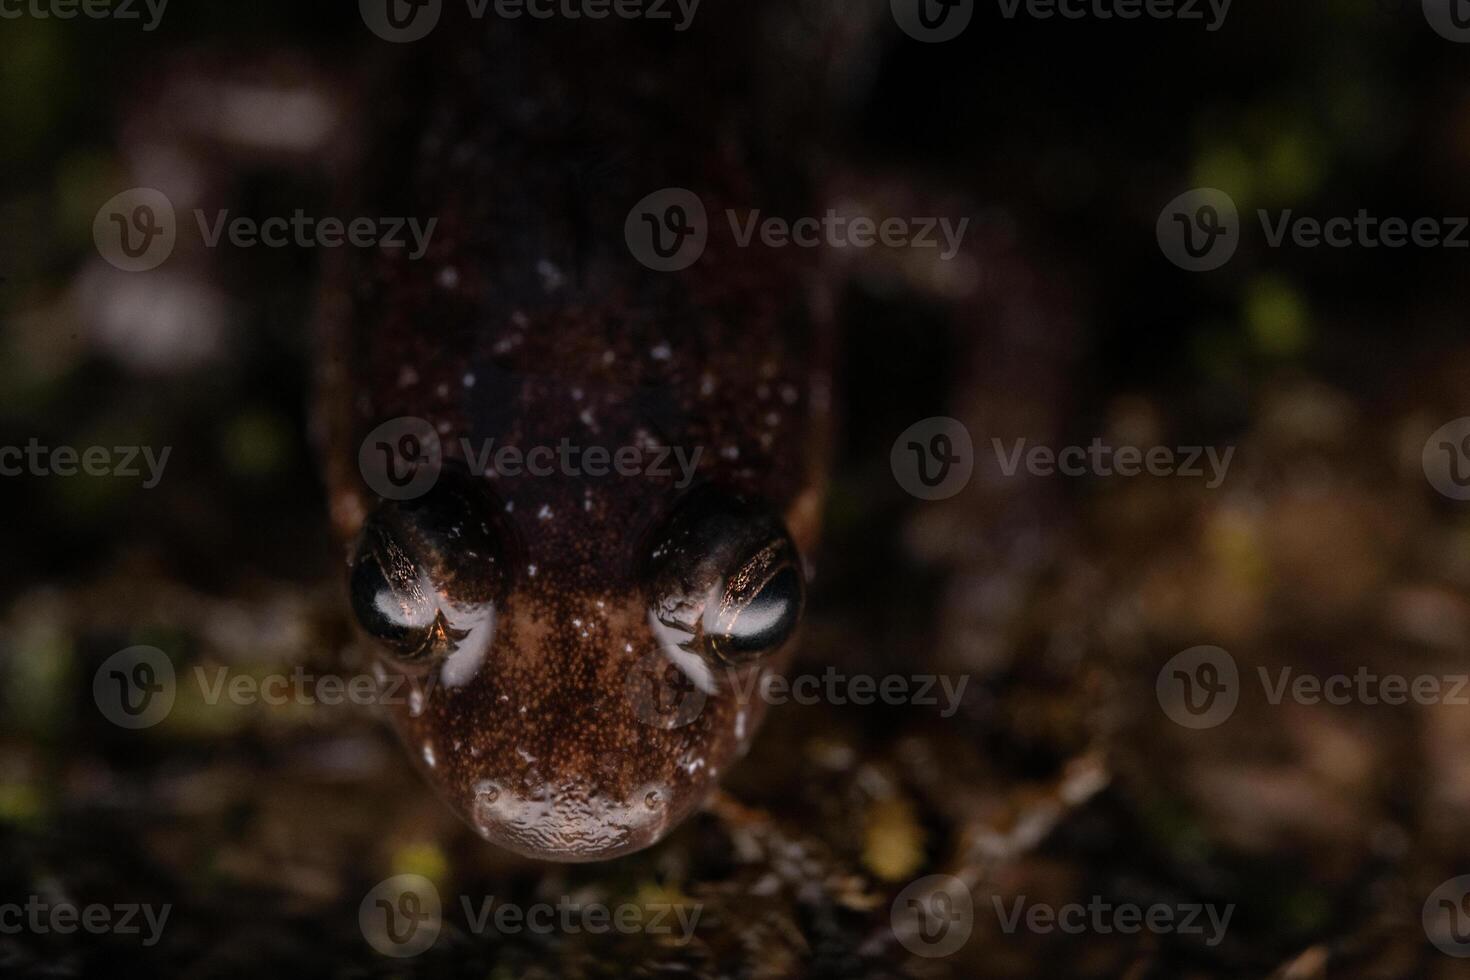 Apalachicola düster Salamander, desmognathus apalachicola foto